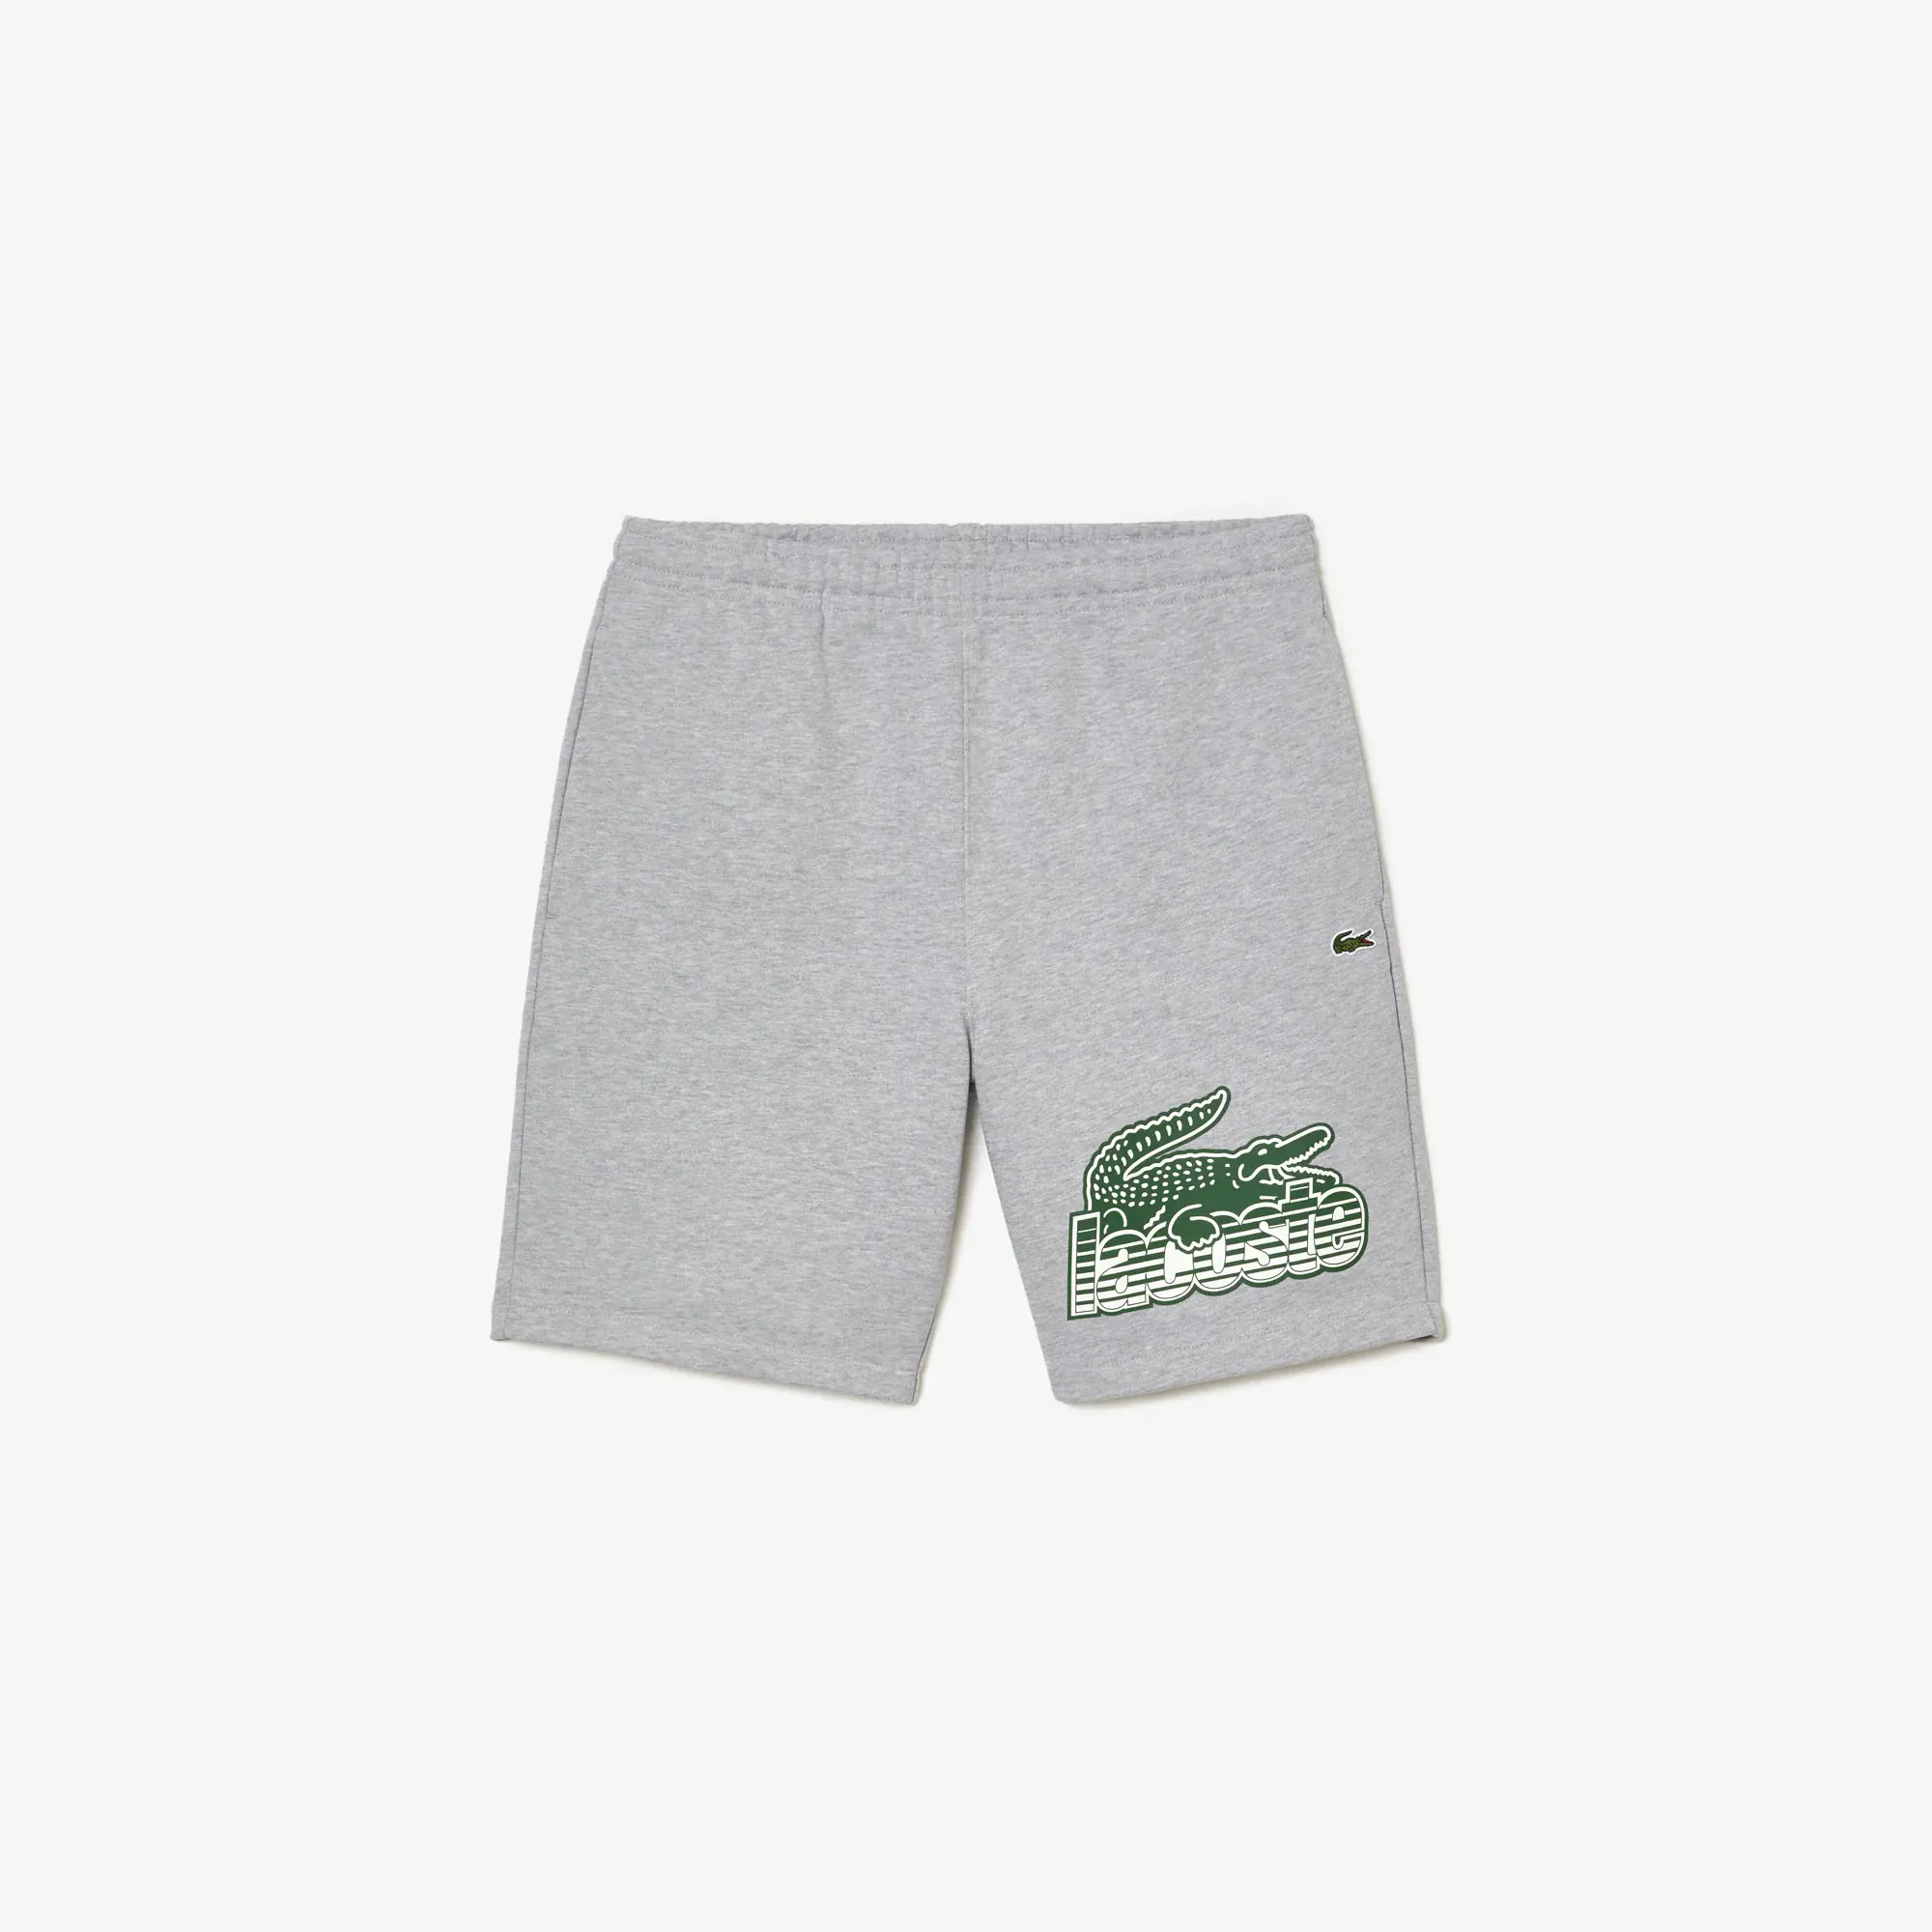 Lacoste Men’s Unbrushed Cotton Fleece Shorts. 2